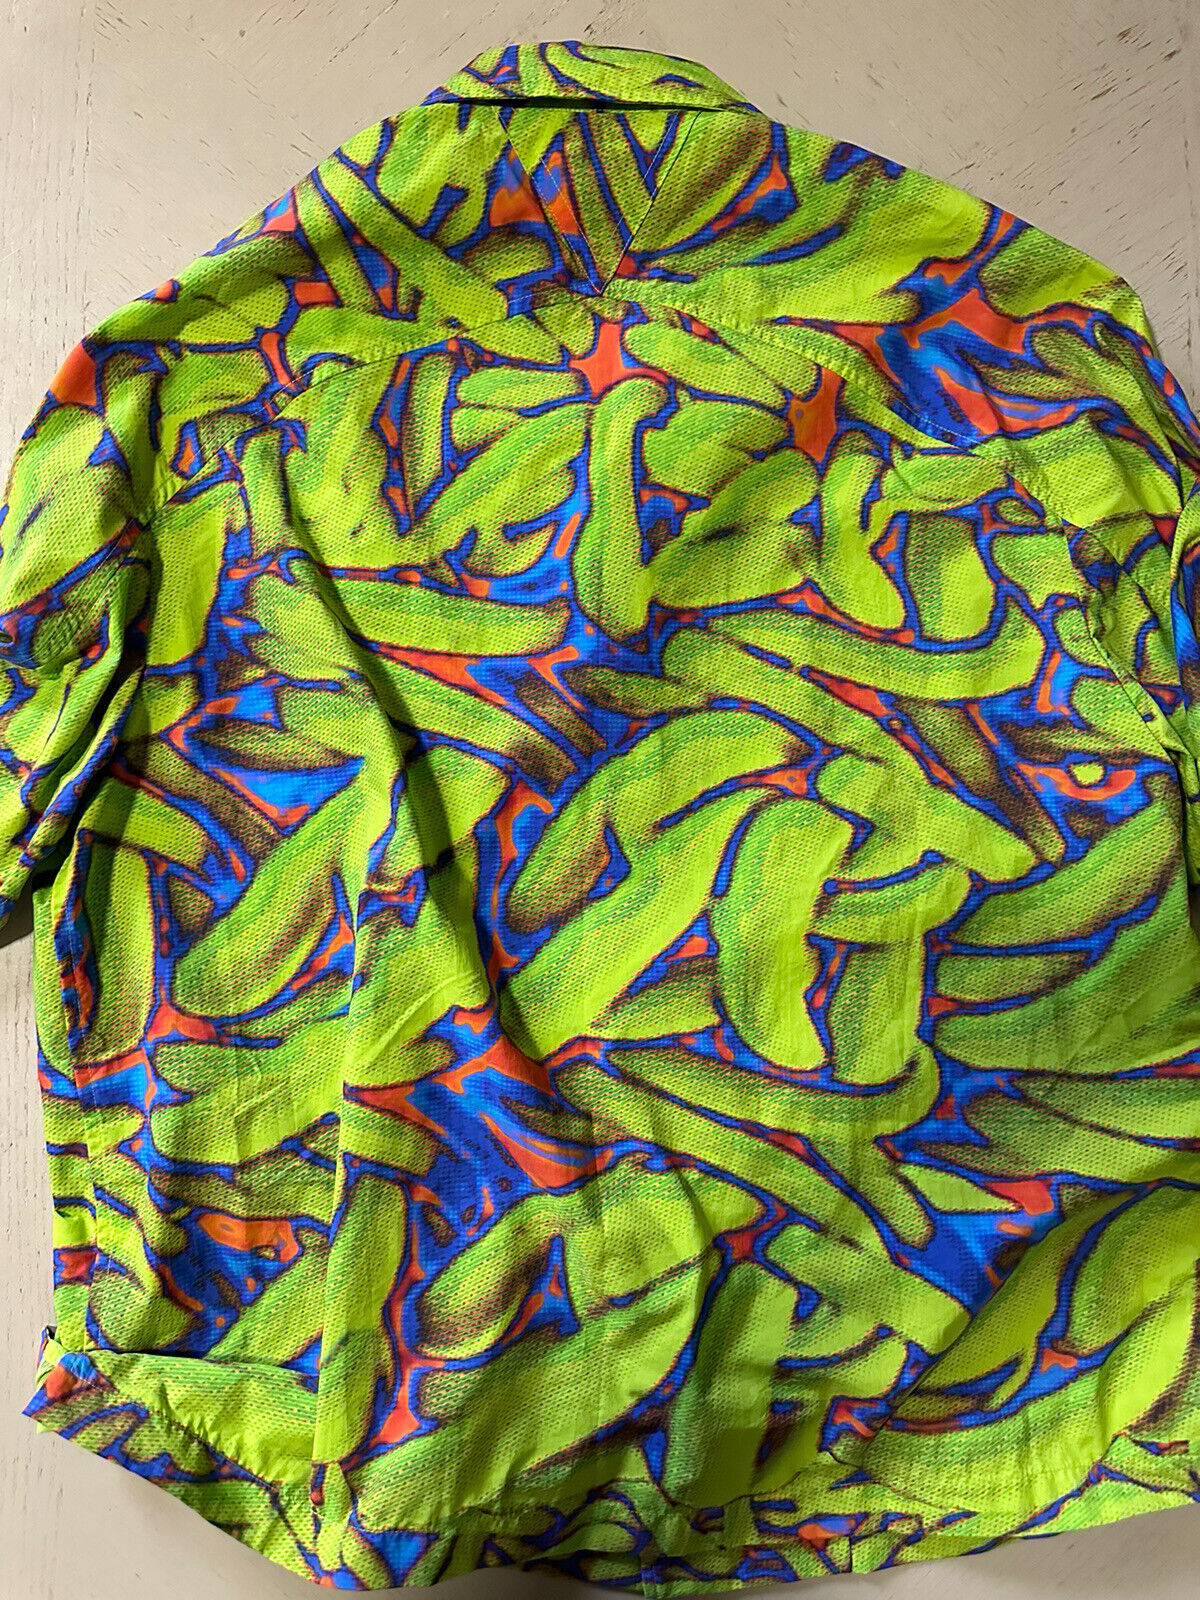 Мужская рубашка оверсайз с принтом бандана Bottega Veneta, NWT 1050 долларов США, ЗЕЛЕНАЯ, L/52 EU